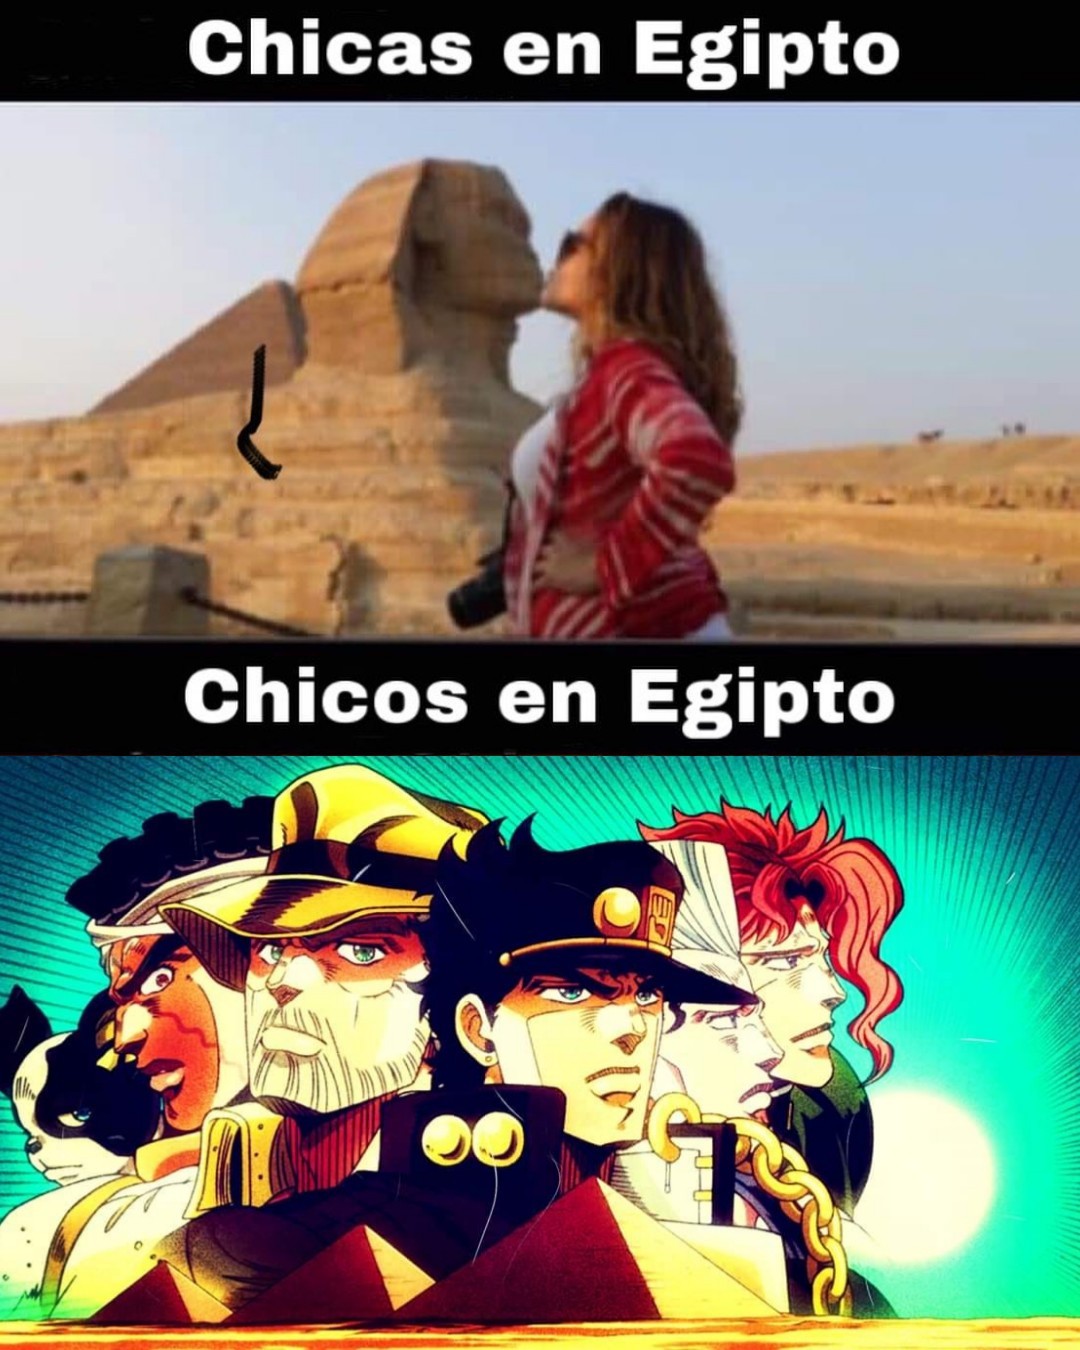 Chicos en Egipto xd - meme